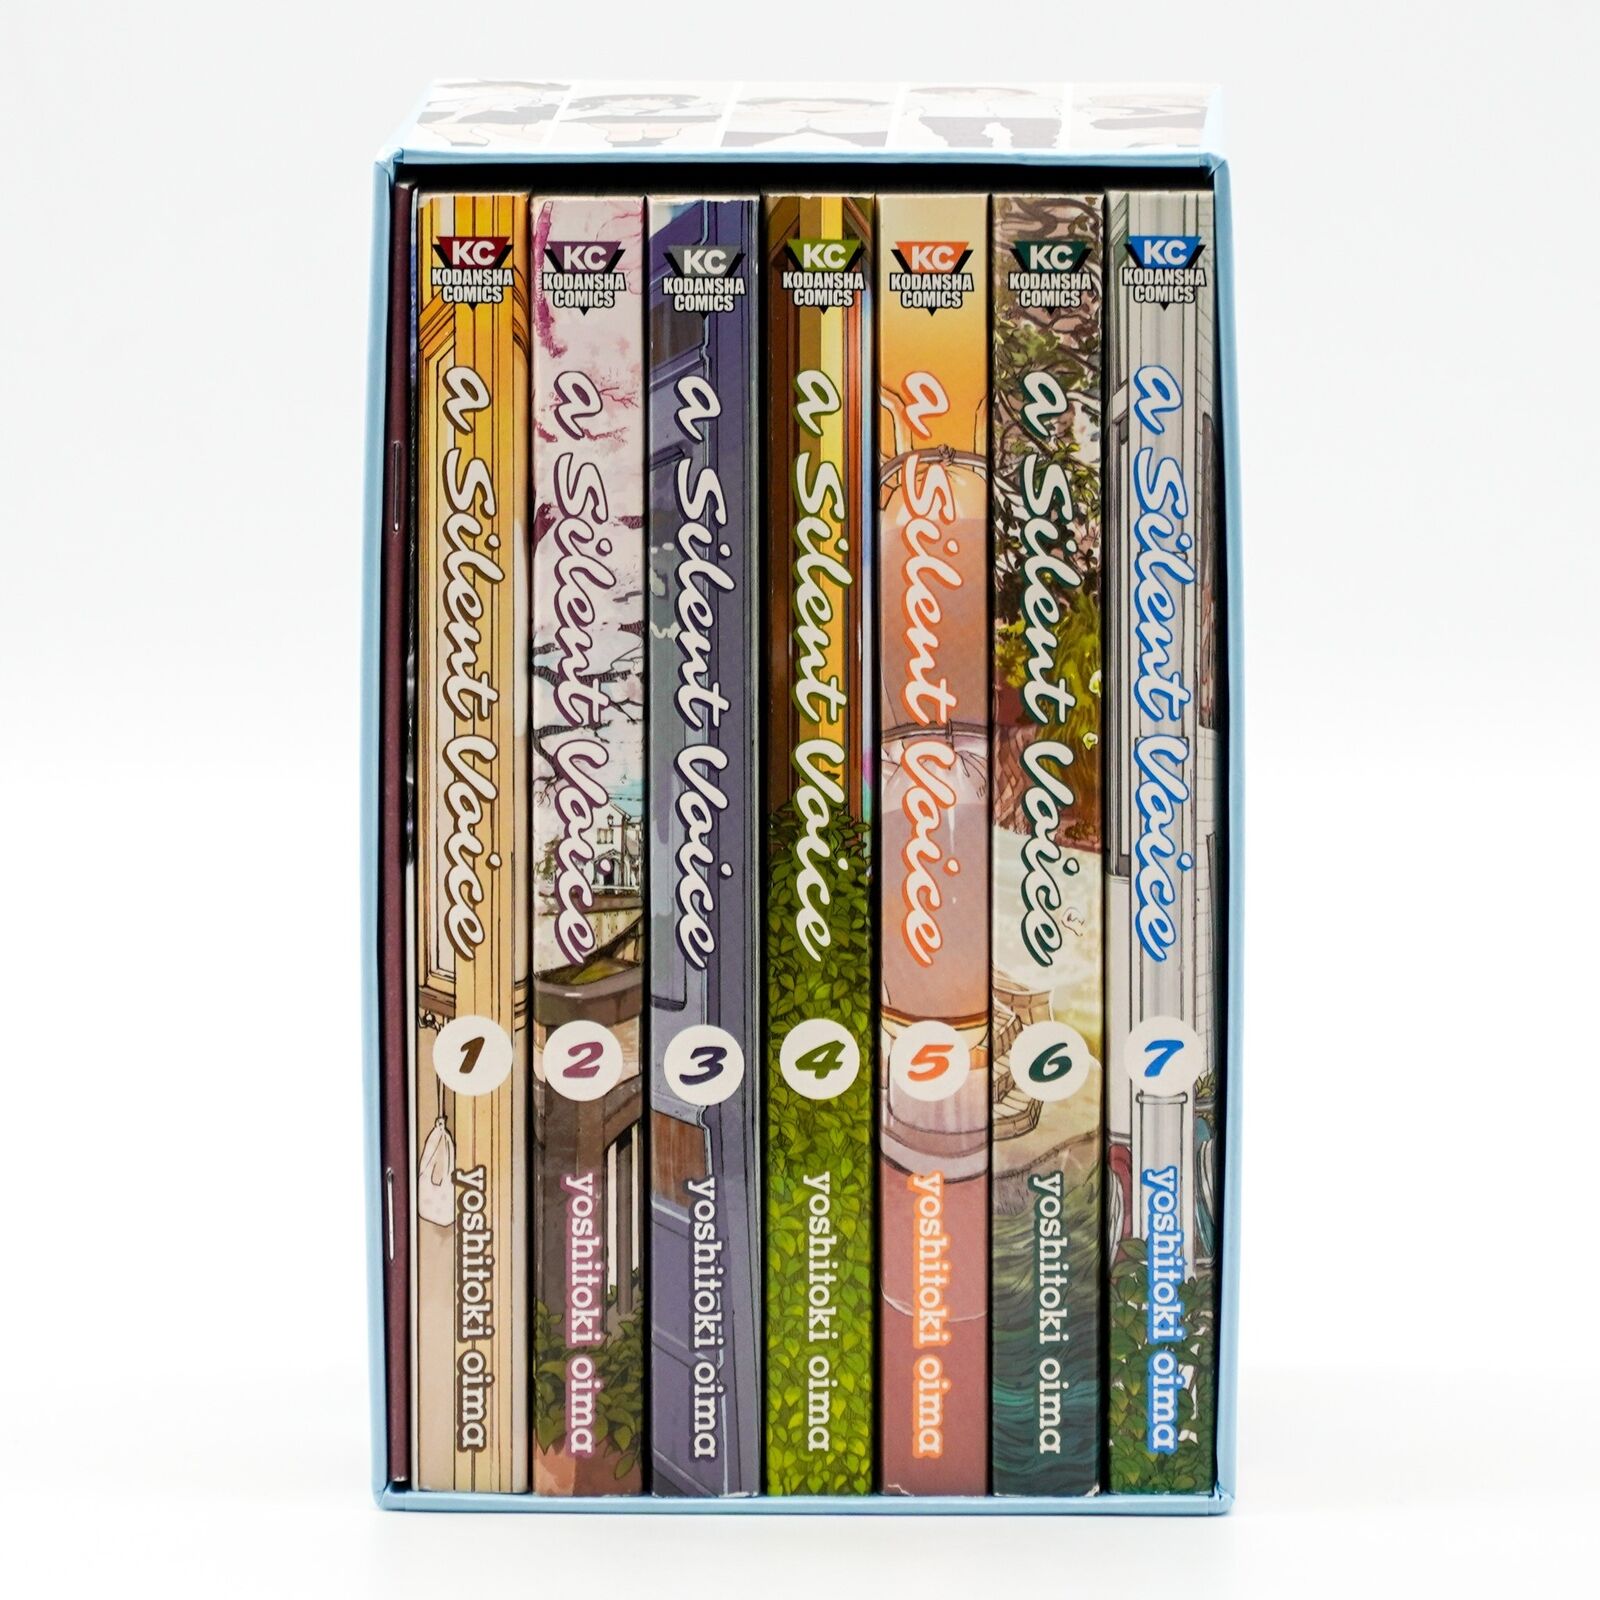 A Silent Voice Complete Series Box Set Paperback Manga Kodansha Yoshitoki Oima